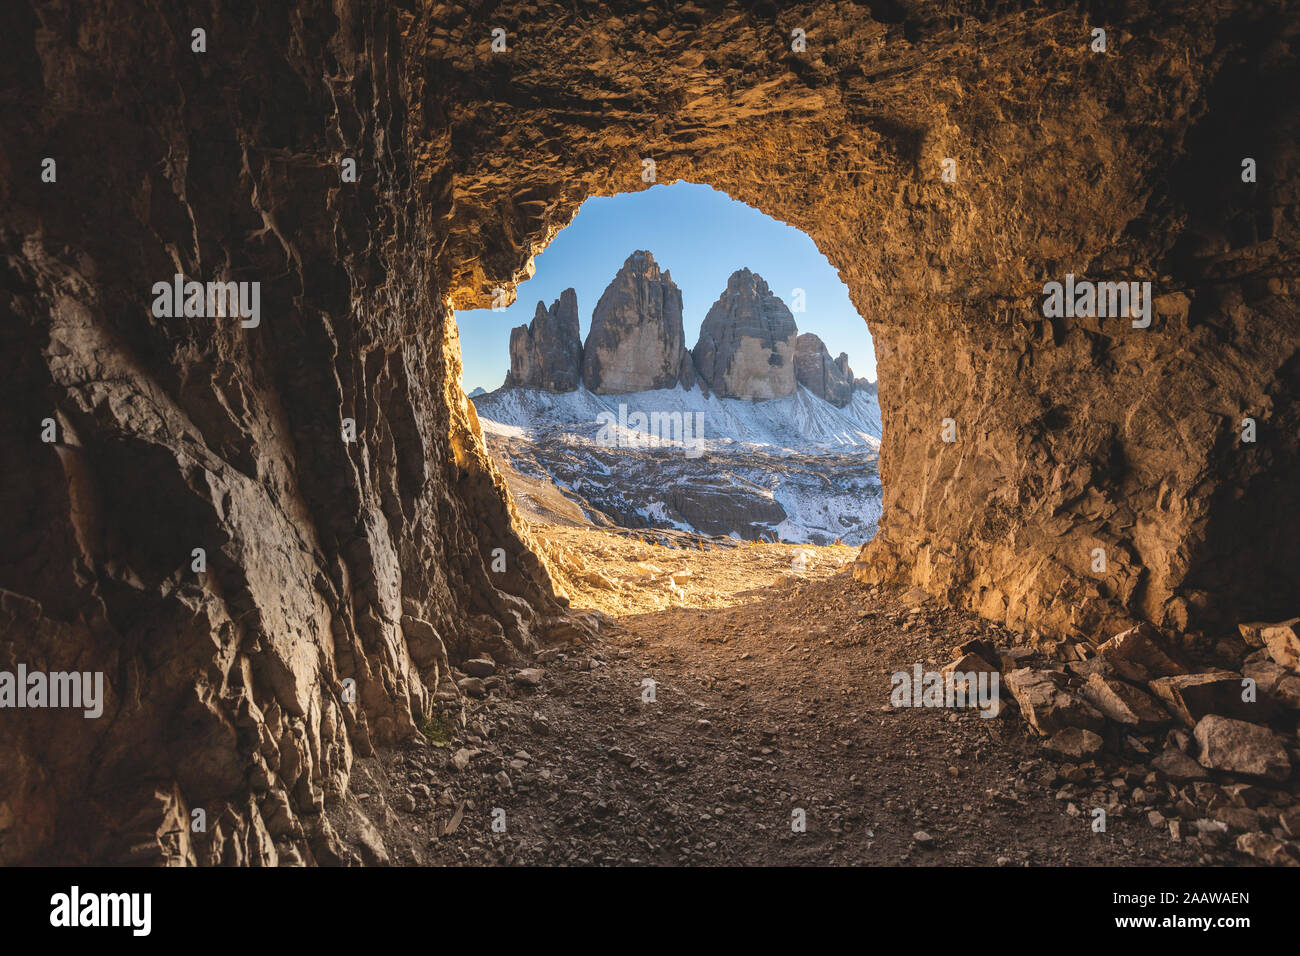 Vista panoramica delle Tre Cime di Lavaredo visto attraverso la grotta, Italia Foto Stock